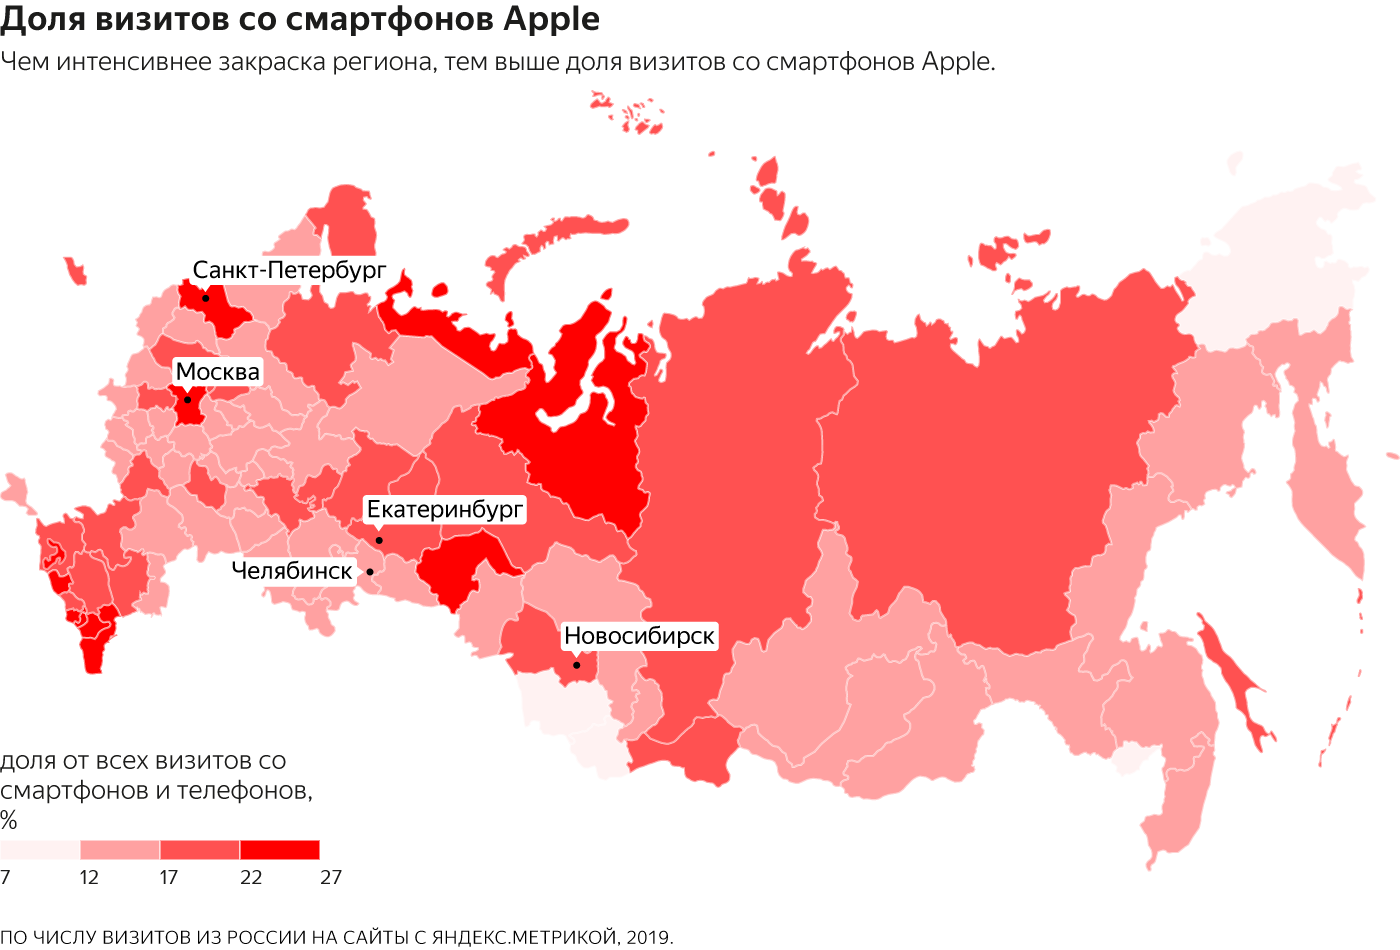 Самая высокая доля визитов со смартфонов Apple - данные рунета